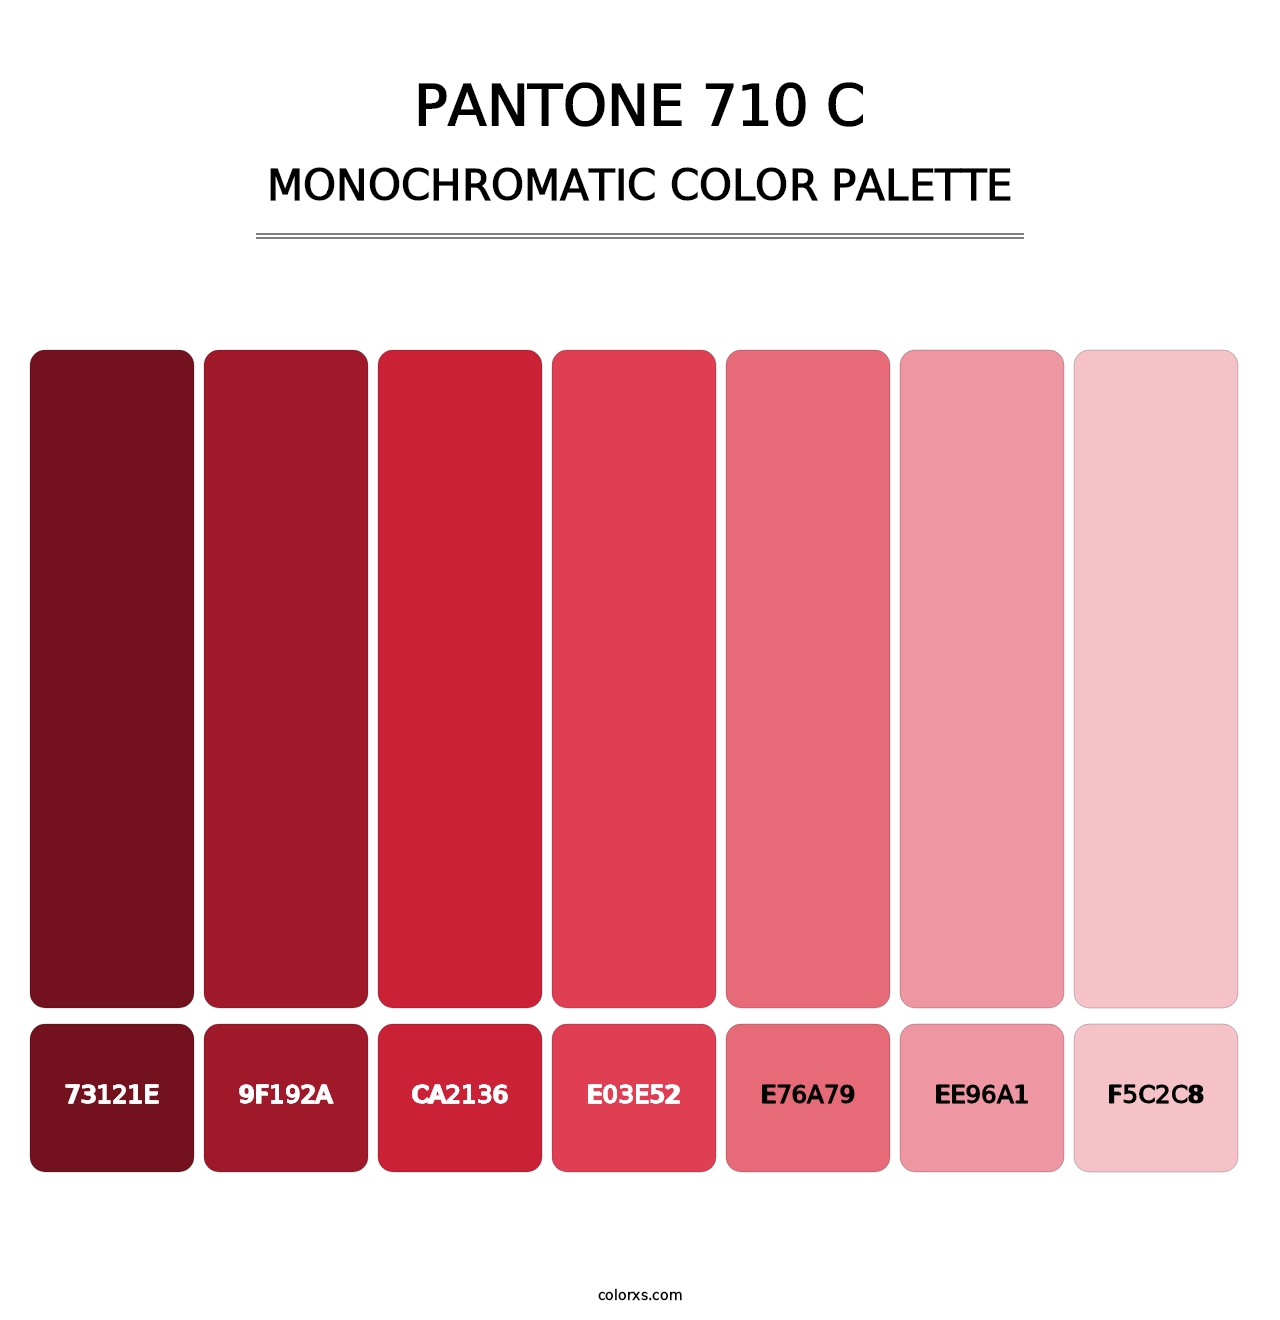 PANTONE 710 C - Monochromatic Color Palette